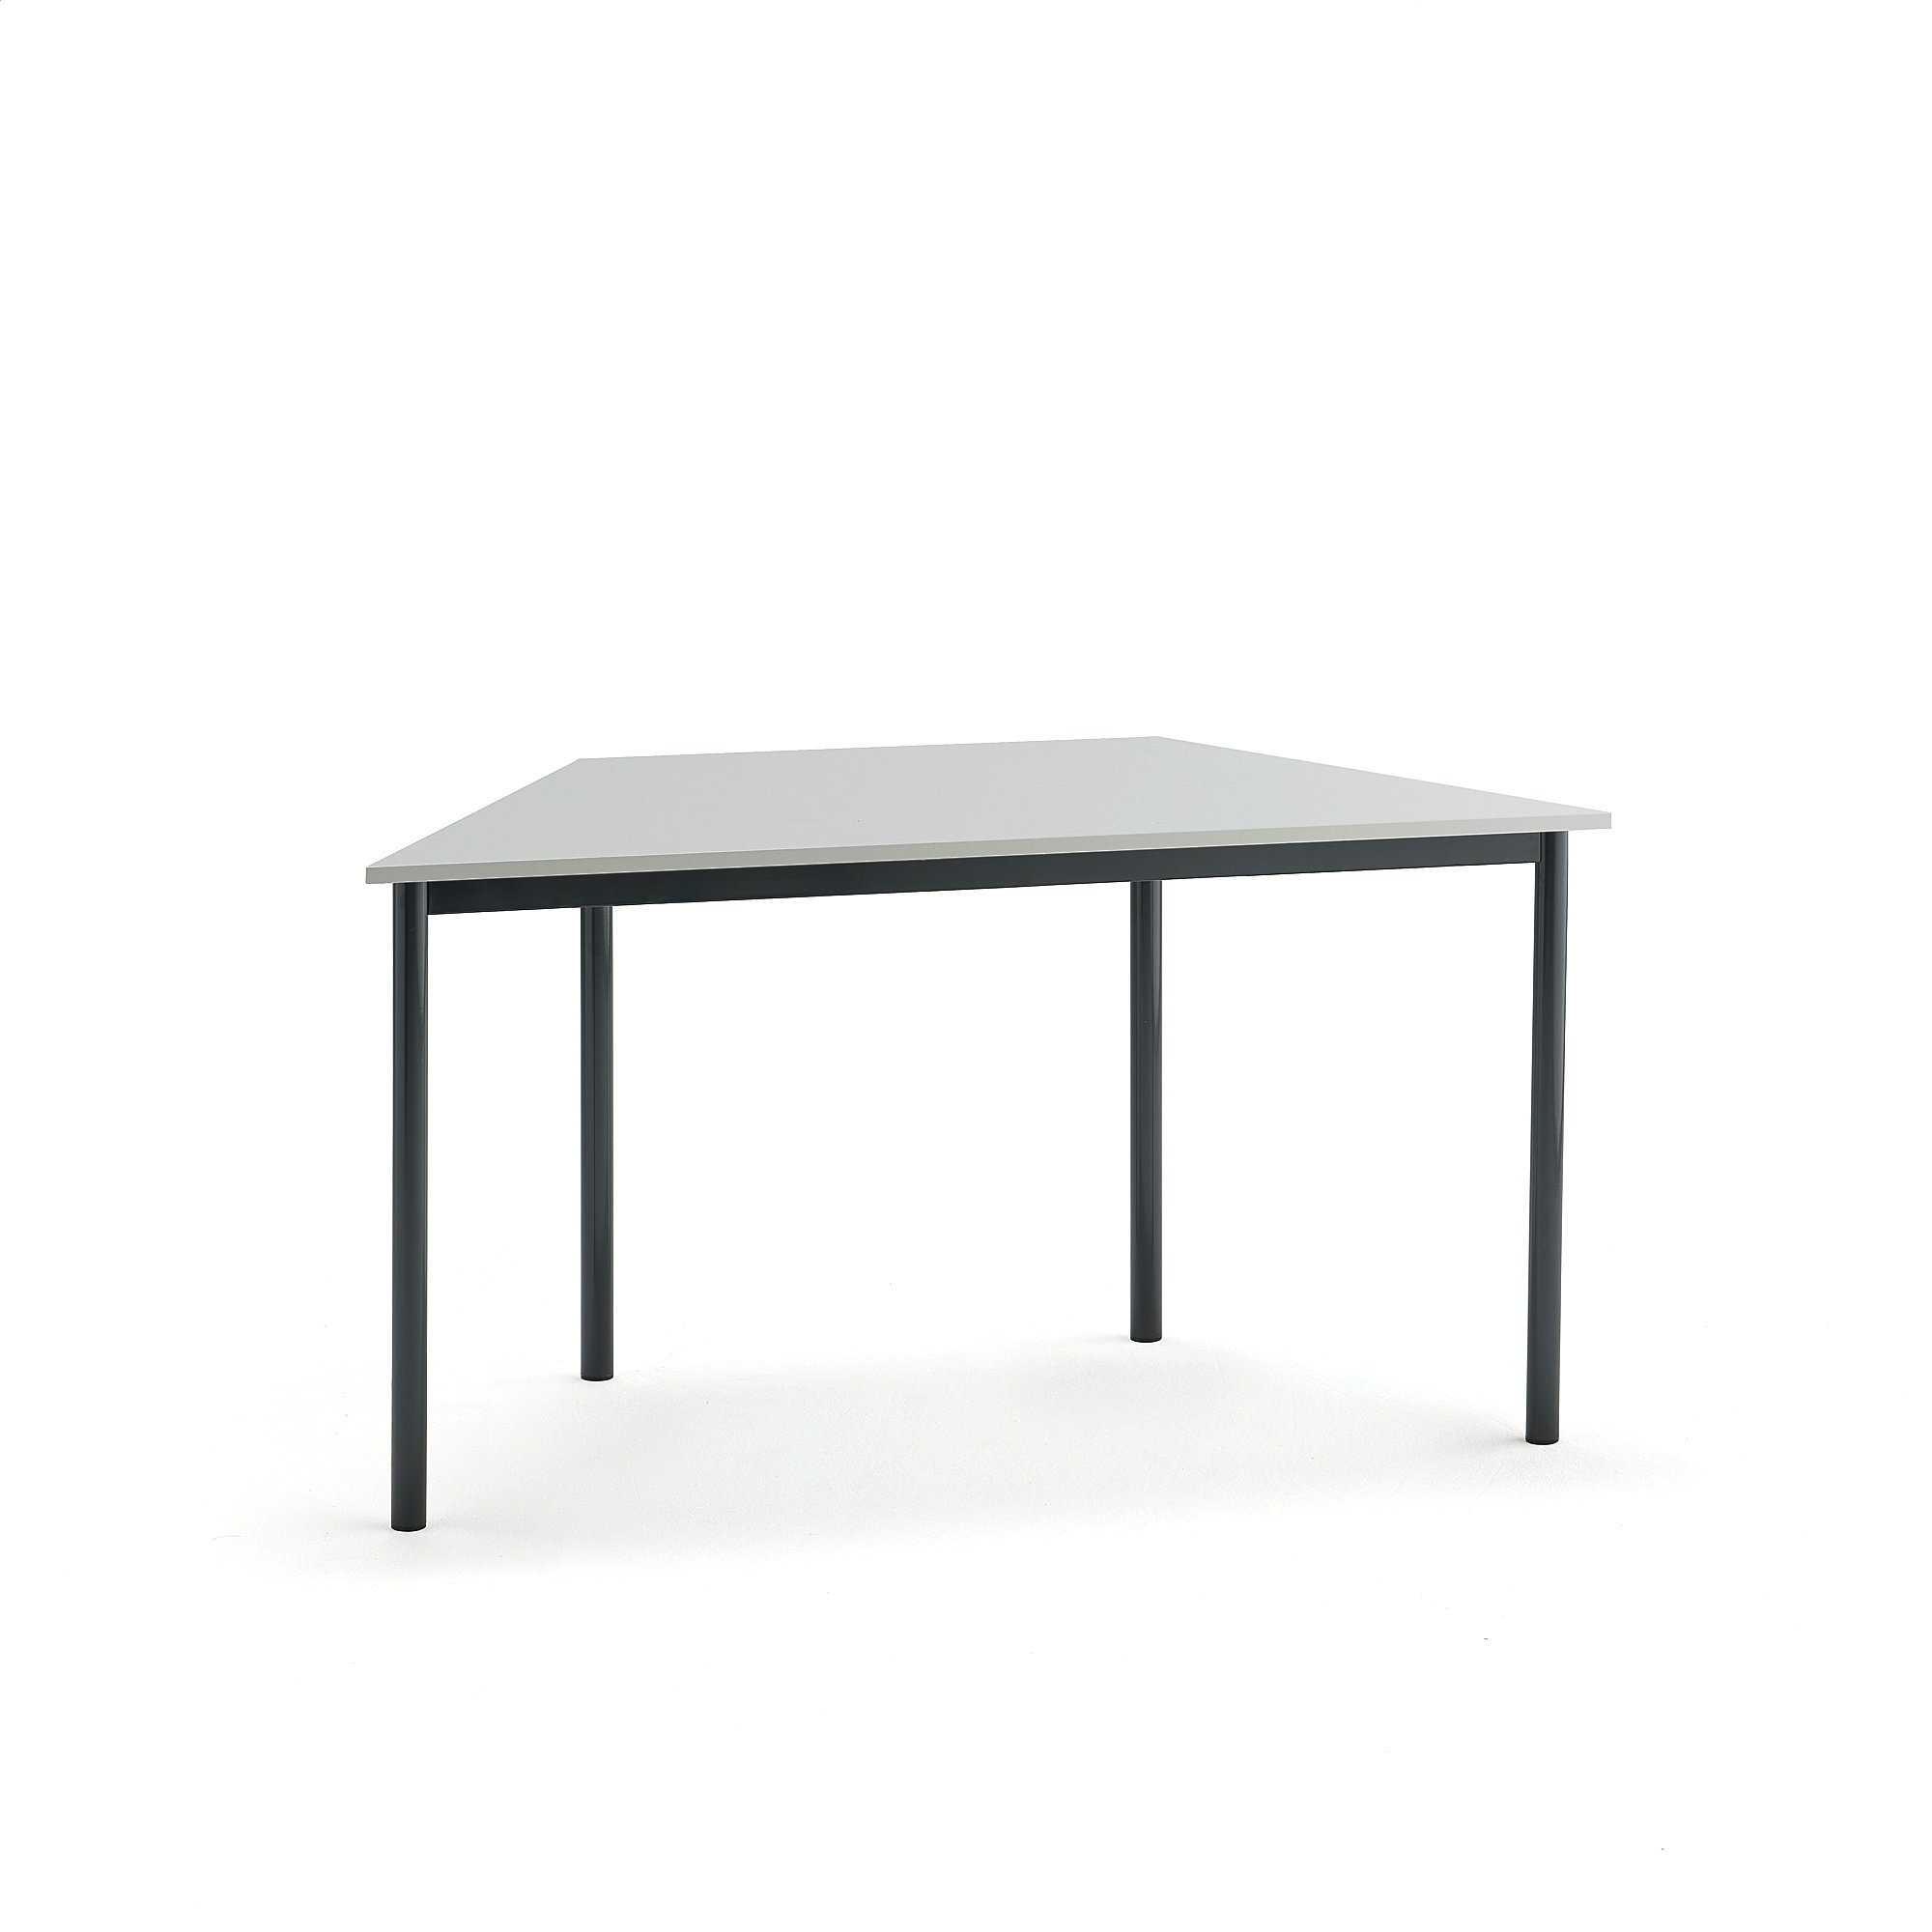 Stůl BORÅS TRAPETS, 1400x700x720 mm, antracitově šedé nohy, HPL deska, šedá